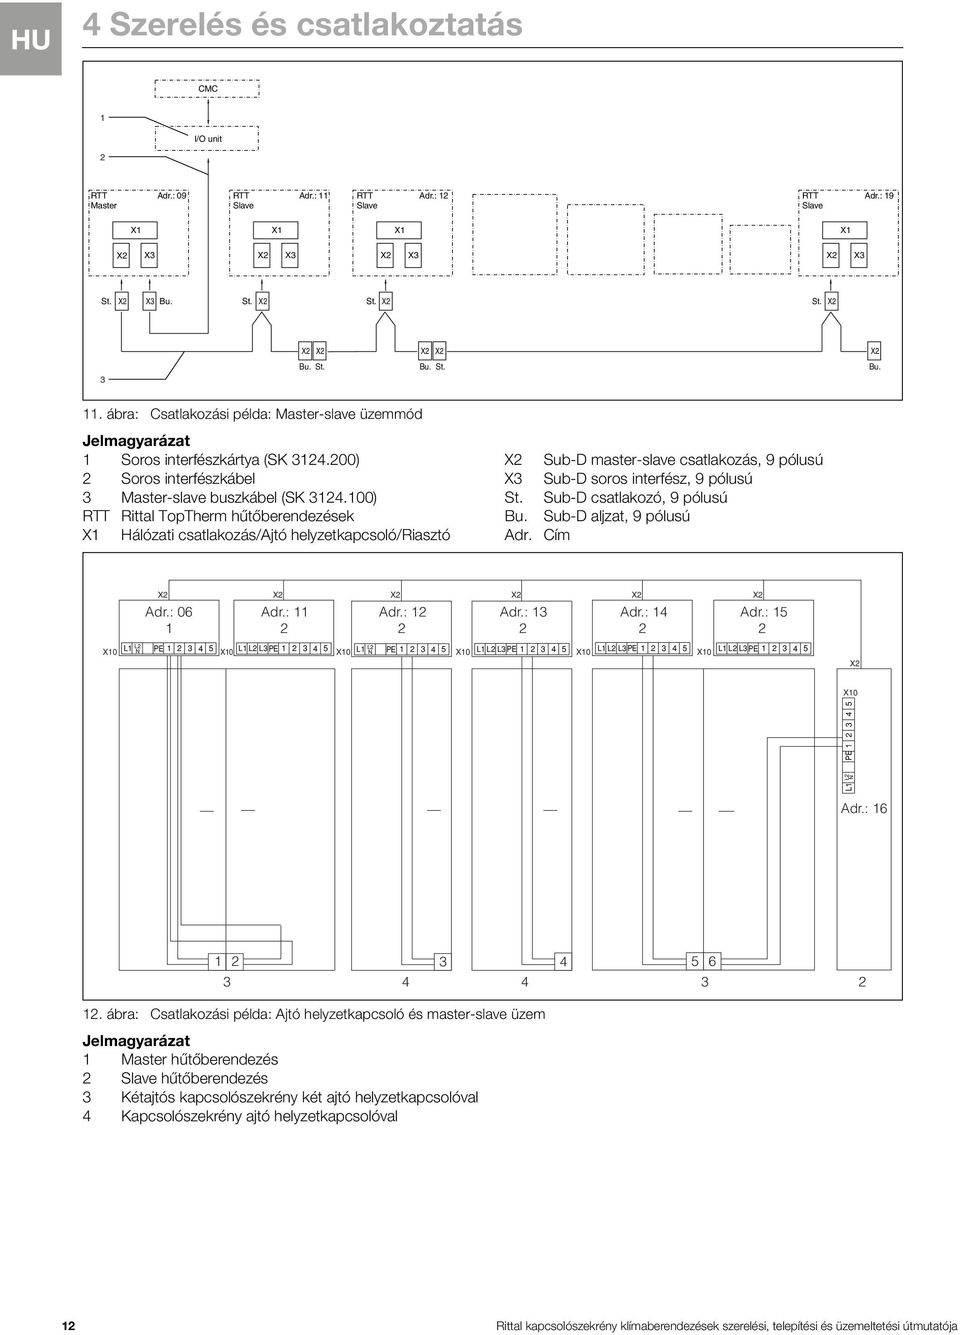 100) RTT Rittal TopTherm hűtőberendezések X1 Hálózati csatlakozás/ajtó helyzetkapcsoló/riasztó X Sub-D master-slave csatlakozás, 9 pólusú X3 Sub-D soros interfész, 9 pólusú St.